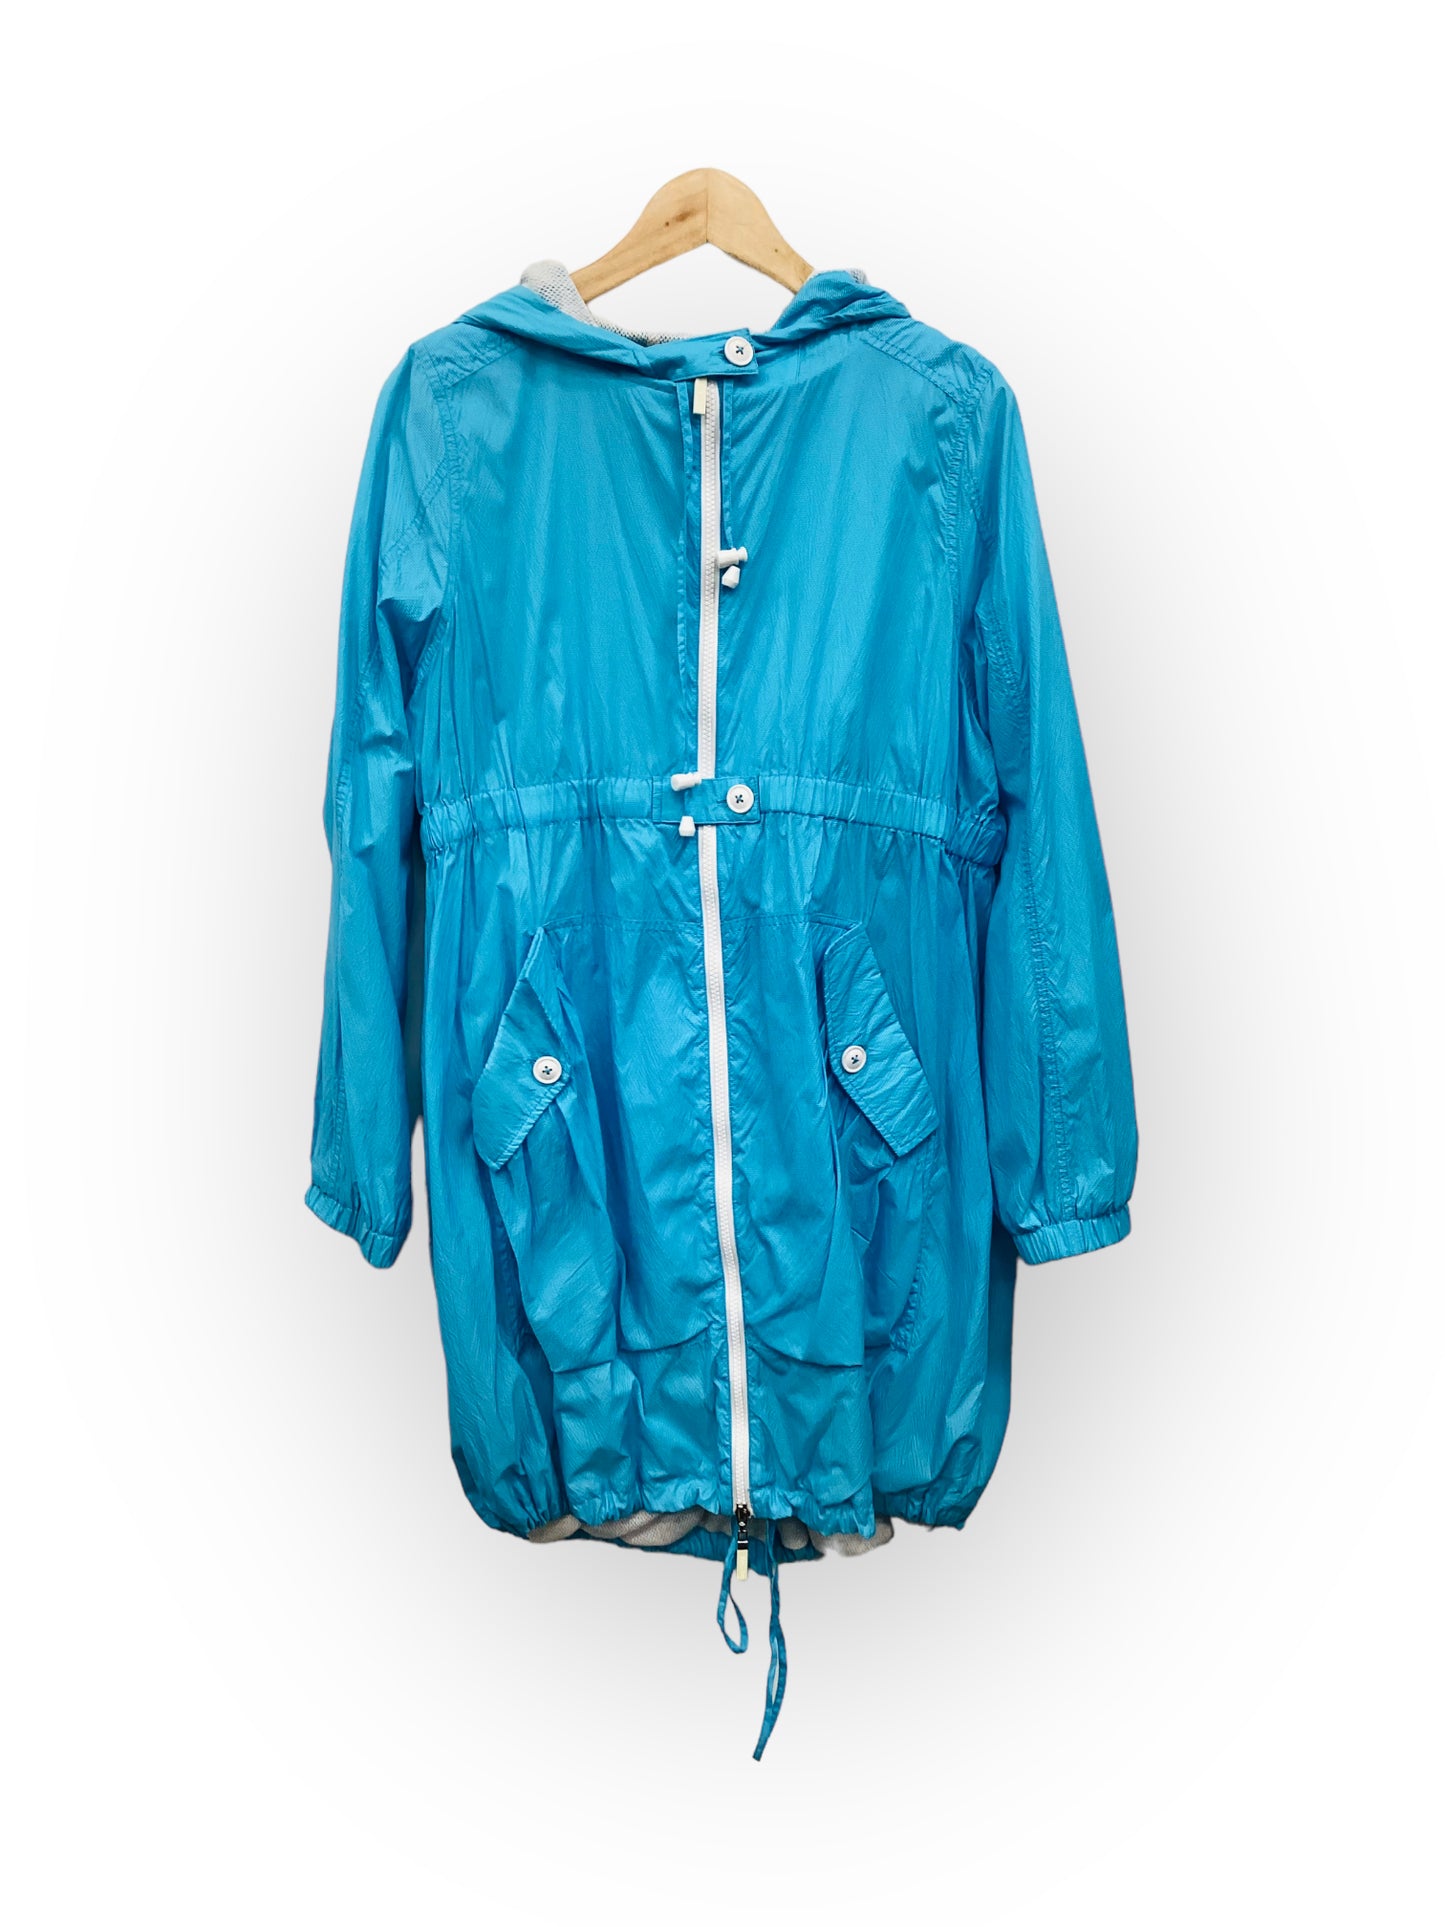 Jacket Windbreaker By Blyse  Size: S